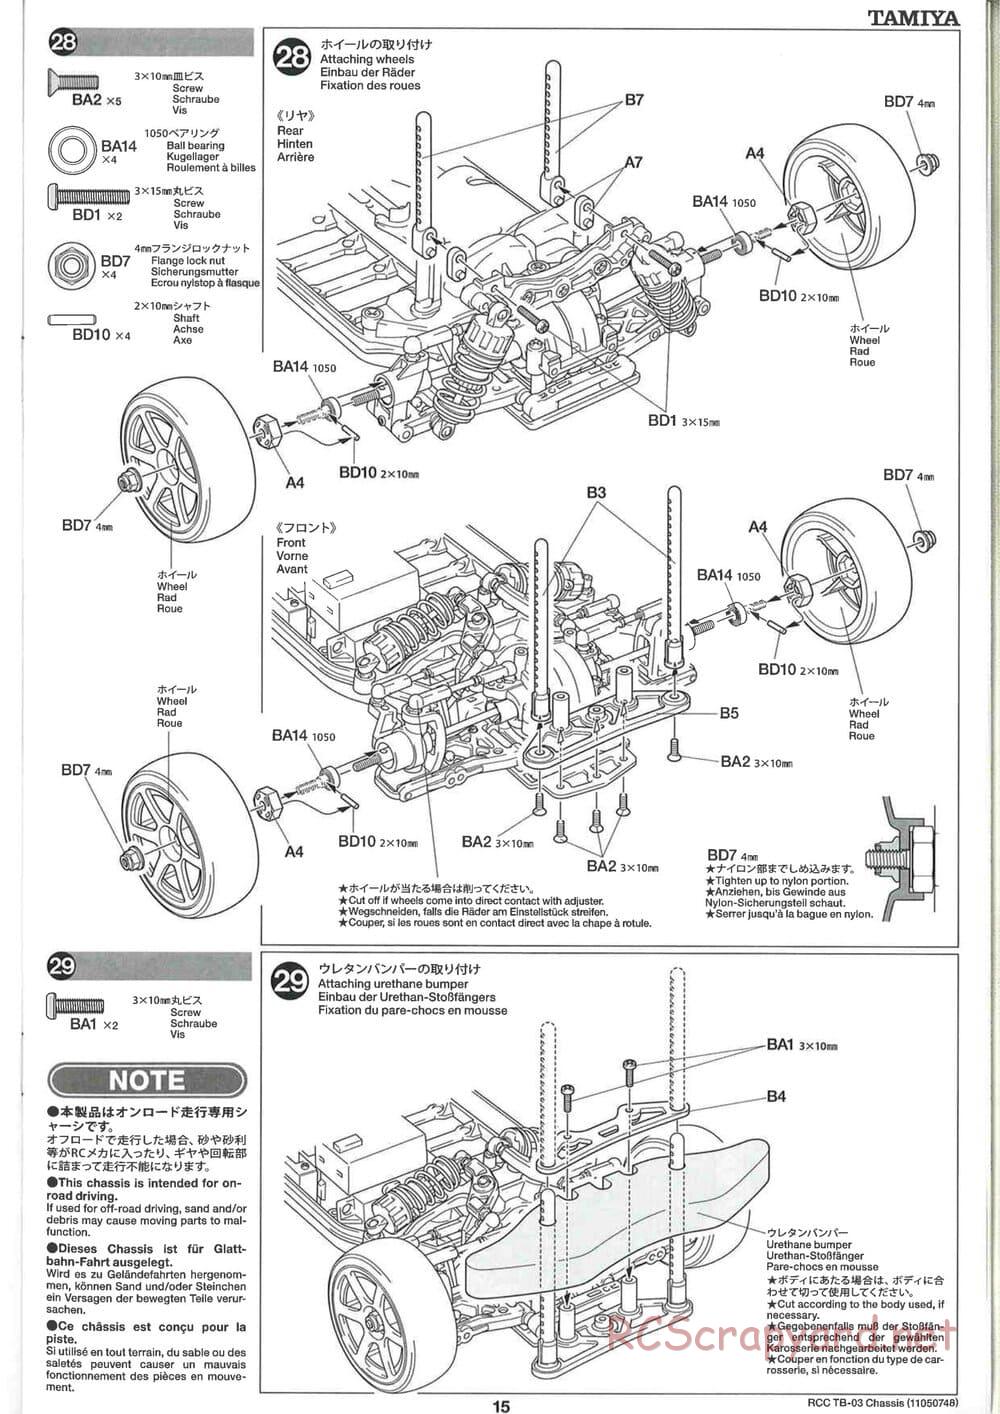 Tamiya - TB-03 Chassis - Manual - Page 15